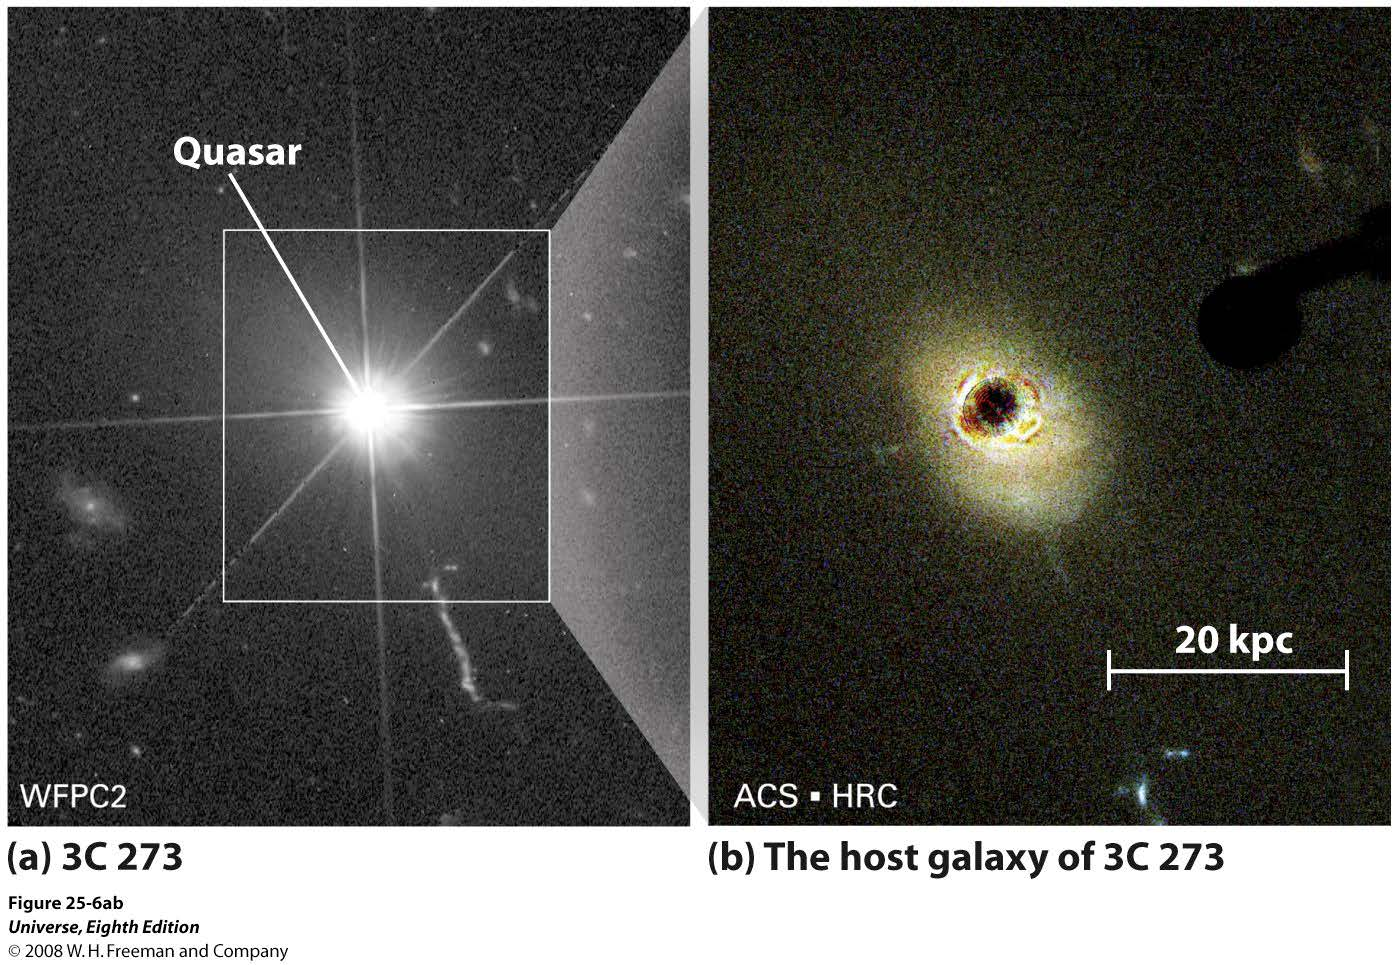 Bortblockerat ljus från kvasaren visar kvasarens